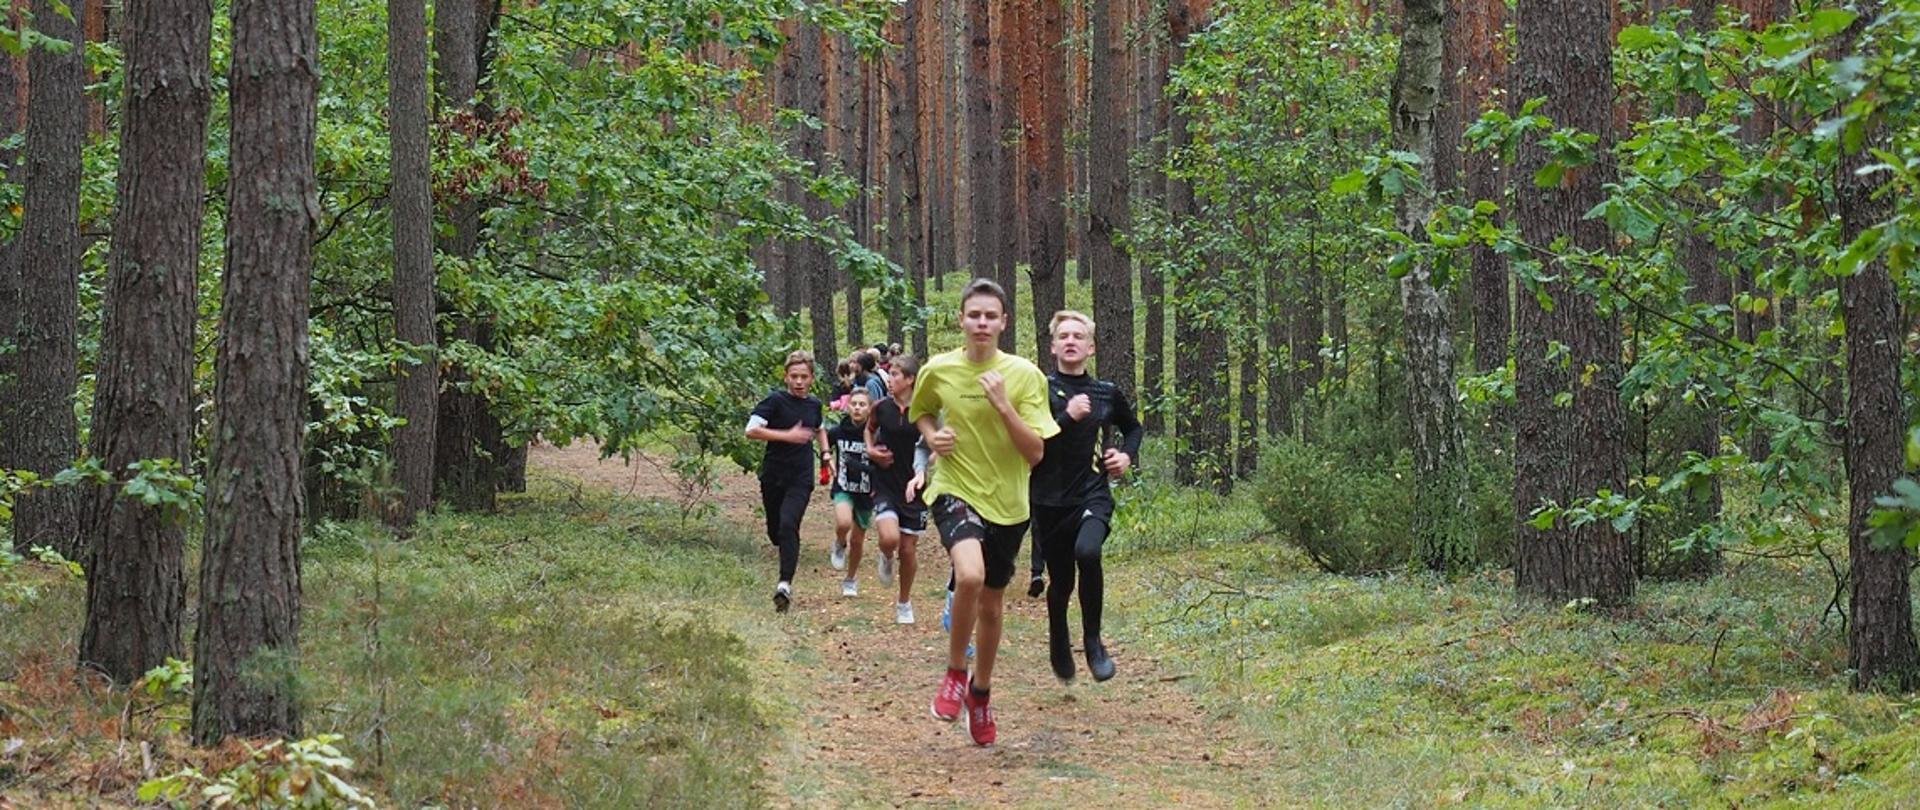 Grupa chłopców biegnie leśną ścieżką